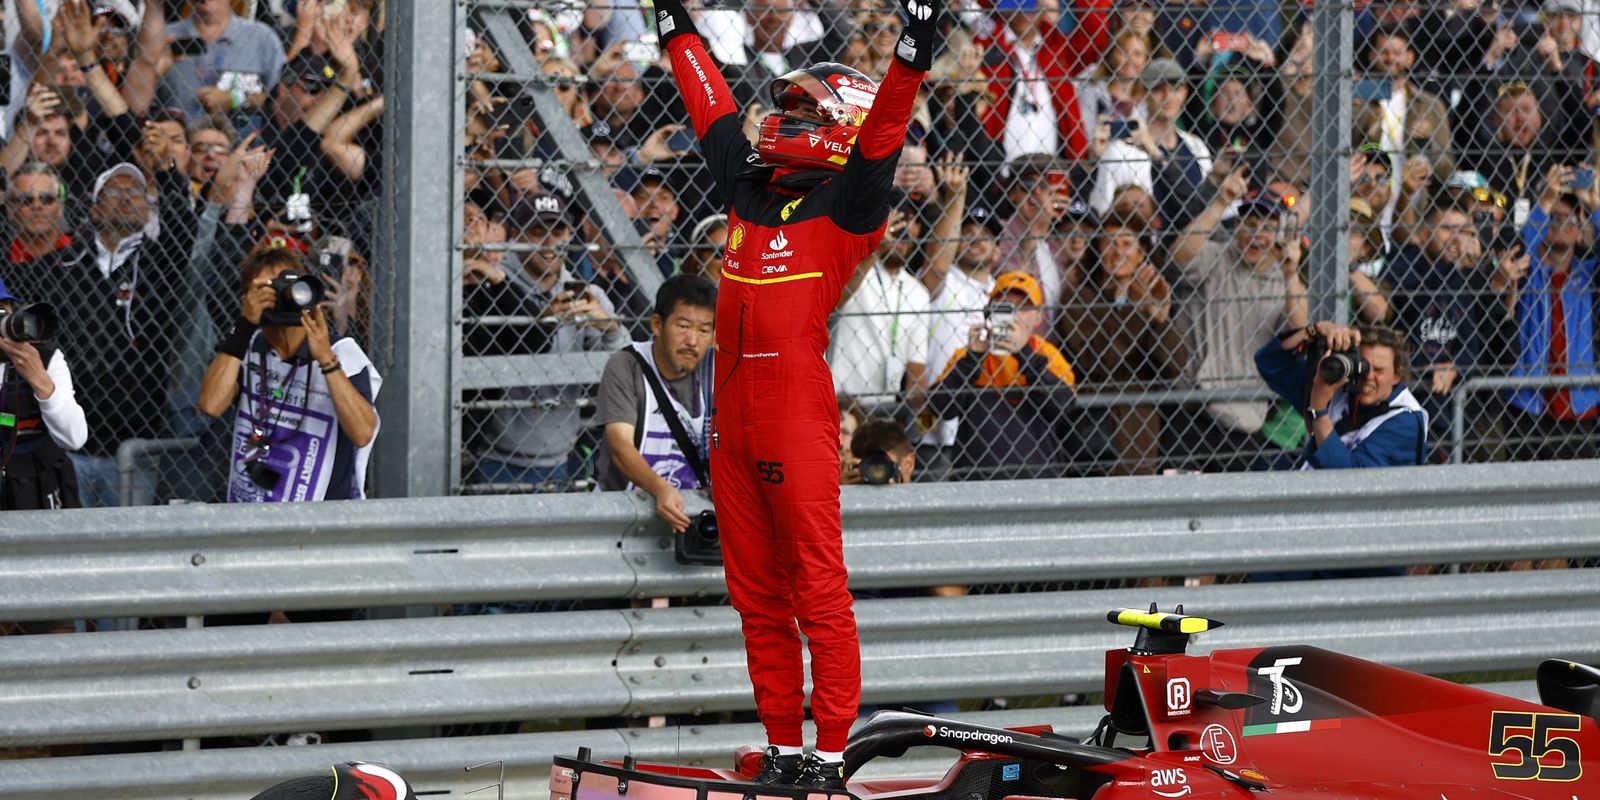 Carlos Sainz triunfa en Silverstone, su primera victoria en F1